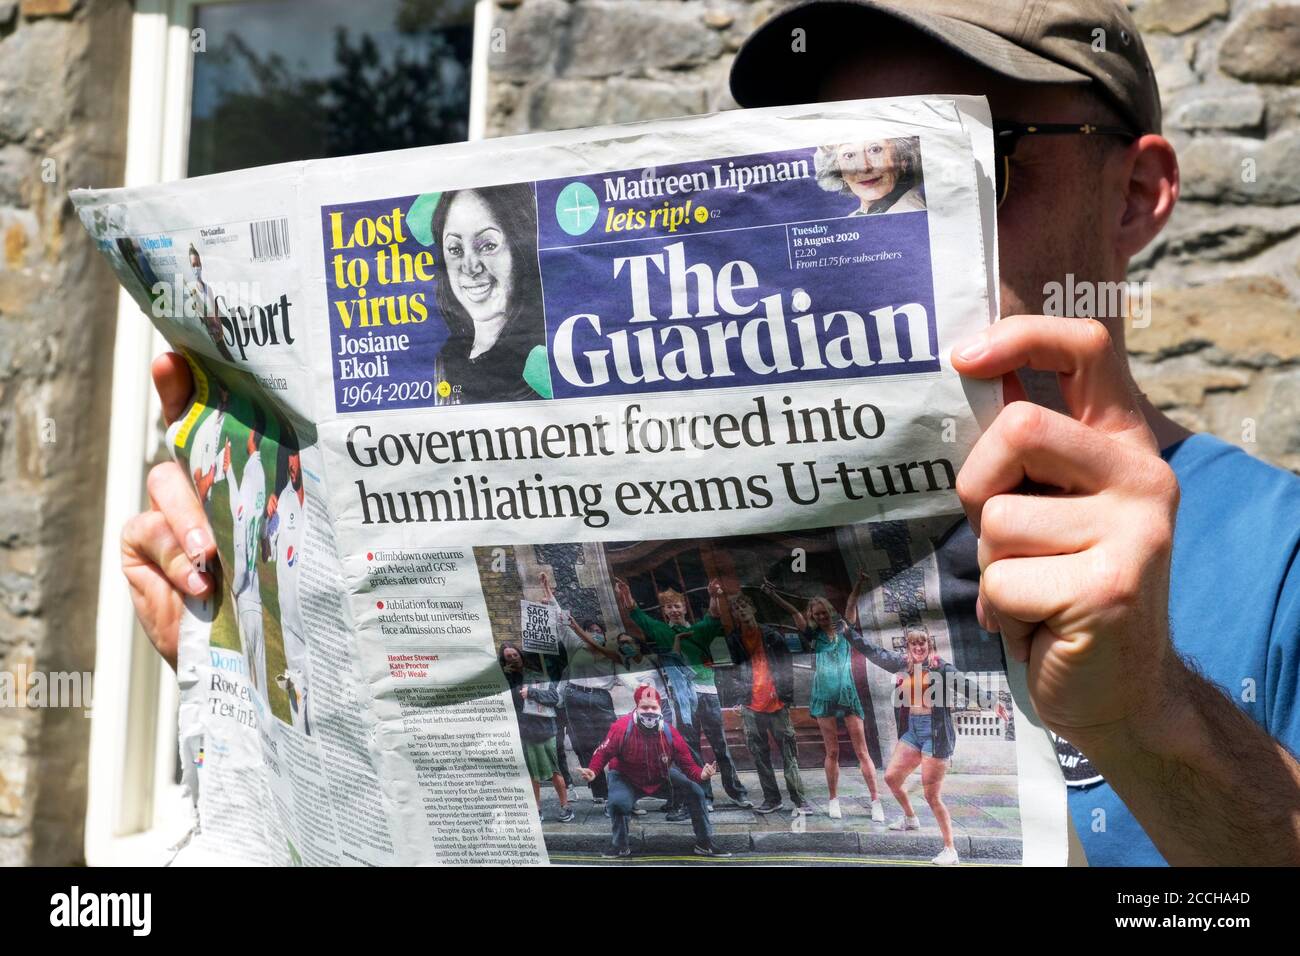 "Regierung gezwungen, zu demütigenden Prüfungen U-Turn" junger Mann Student Lesen Guardian Zeitung Schlagzeile August 2020 London England Großbritannien Stockfoto